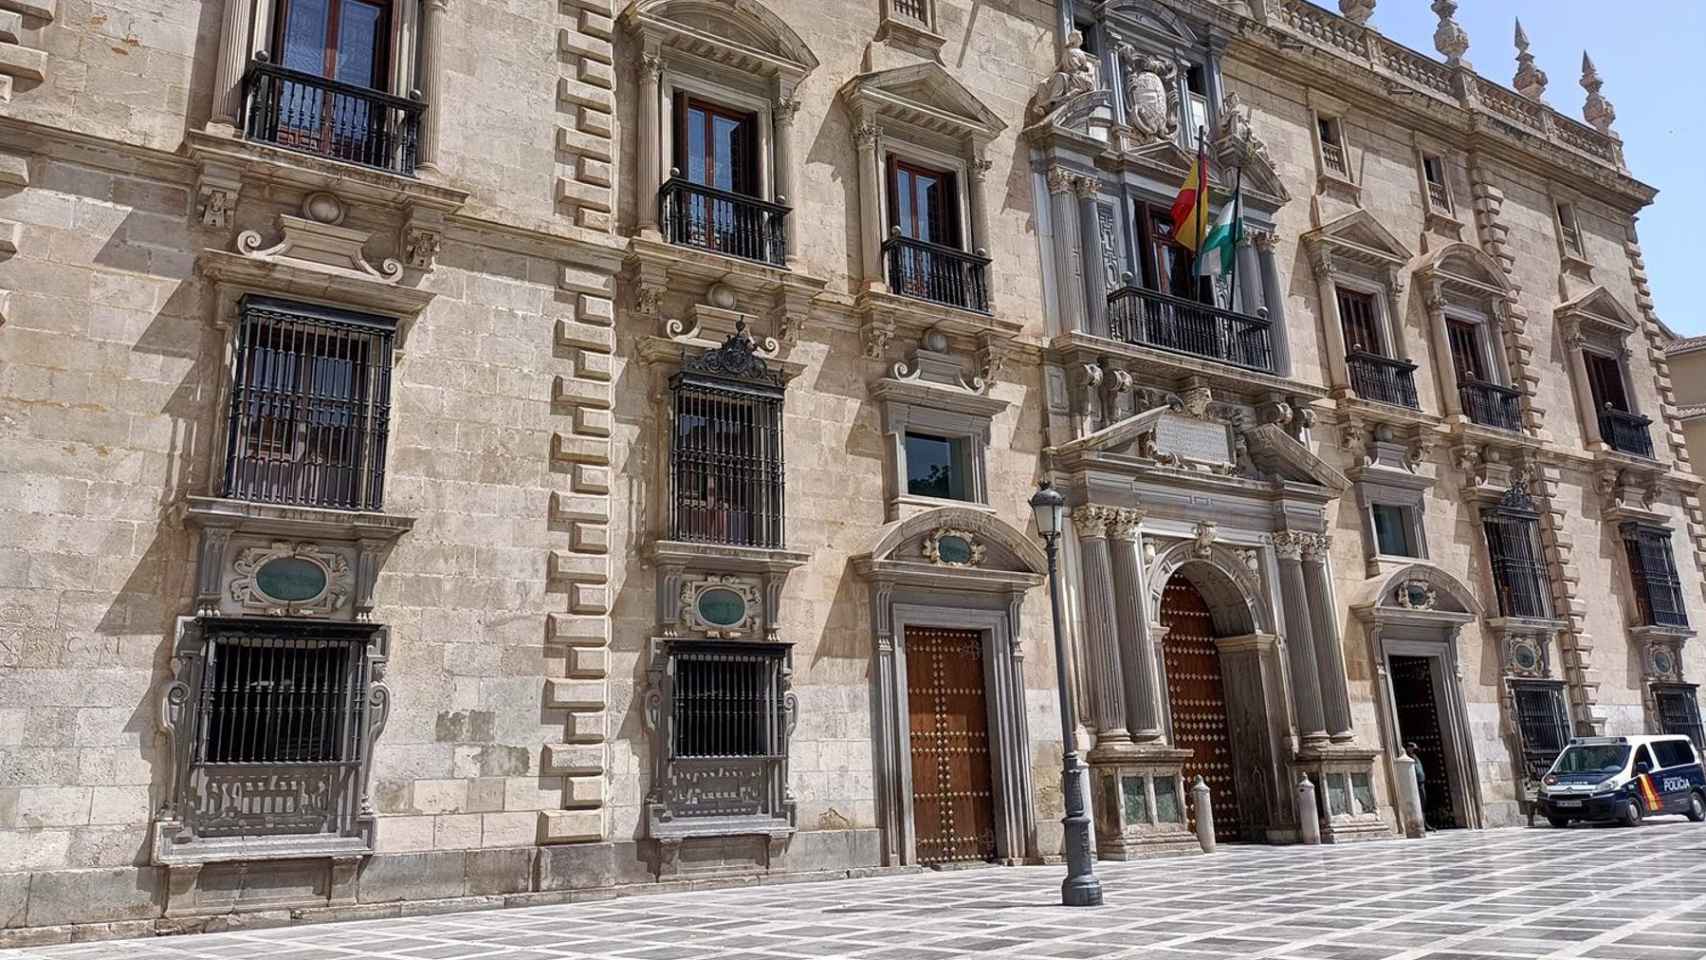 Real Chancillería de Granada, sede del Tribunal Superior de Justicia de Andalucía (TSJA).